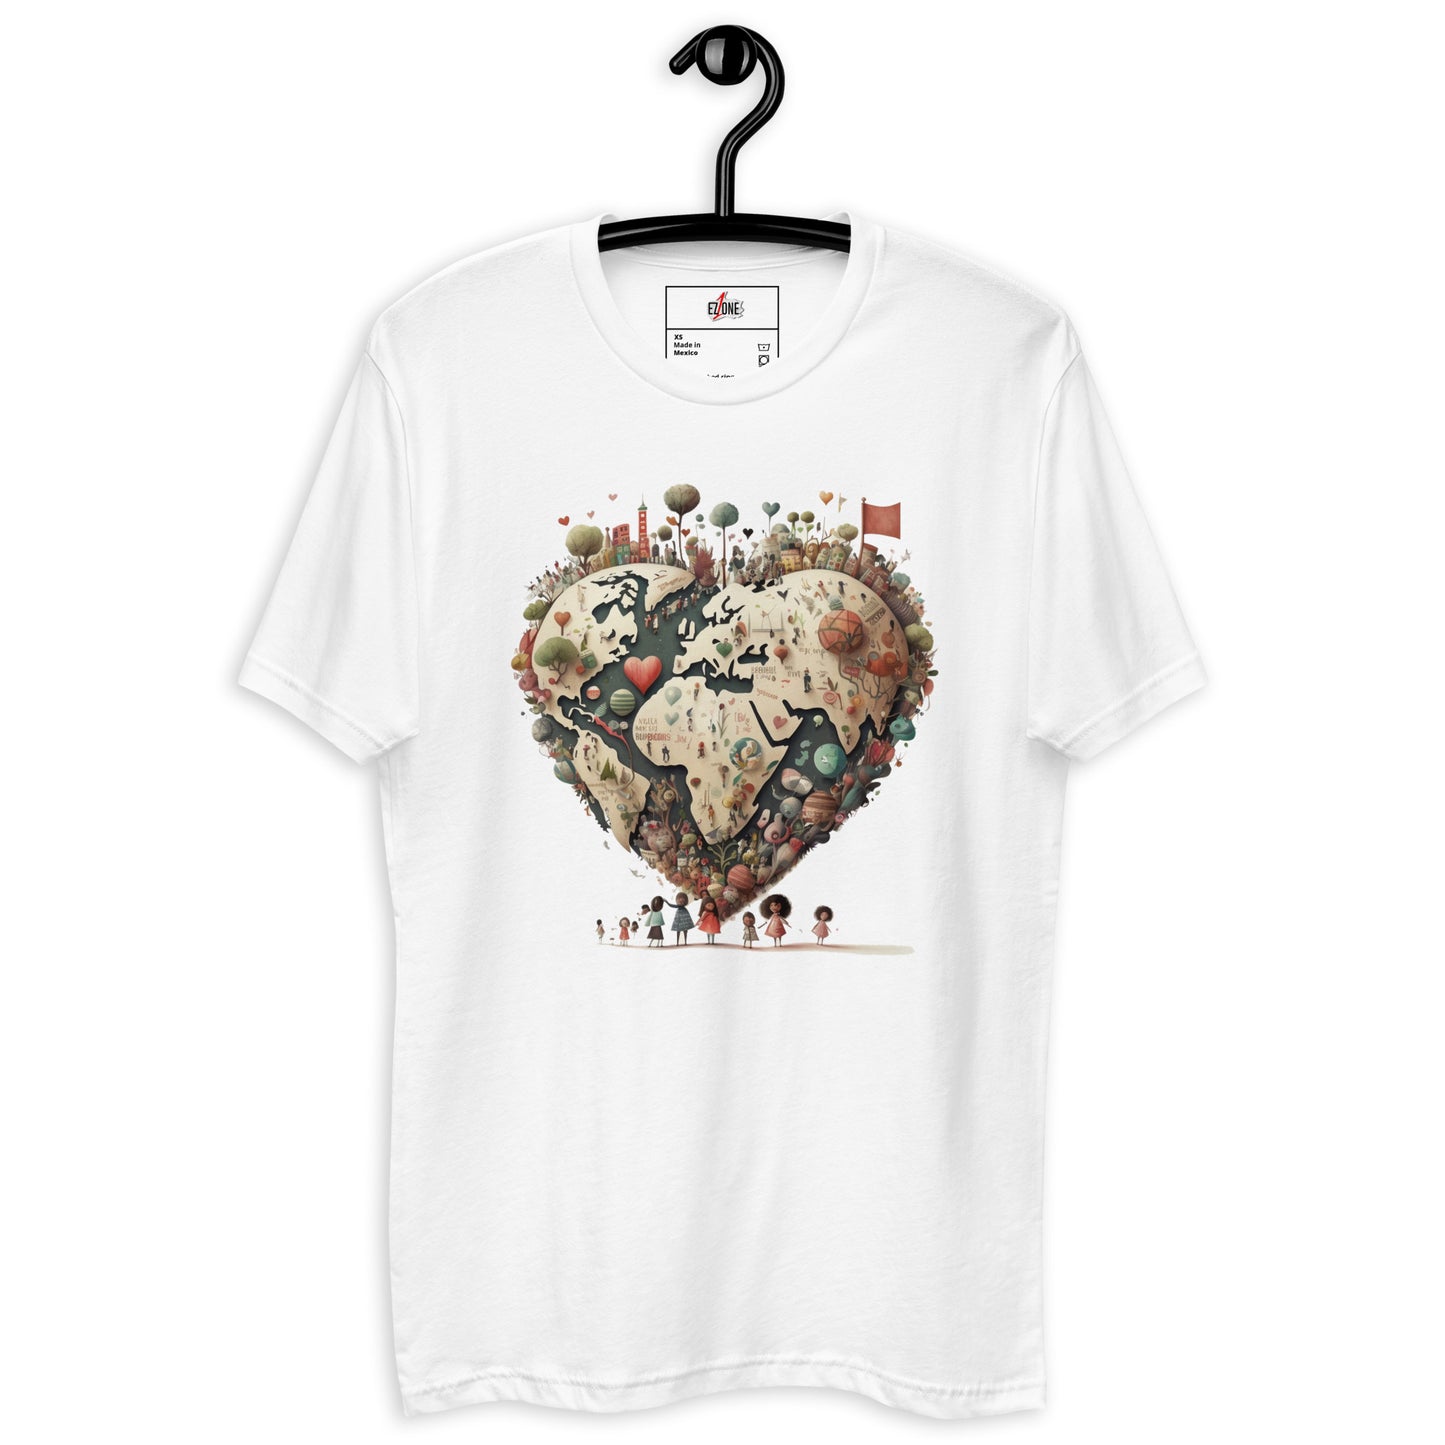 WFOL (World Full Of Love) - Short Sleeve T-shirt